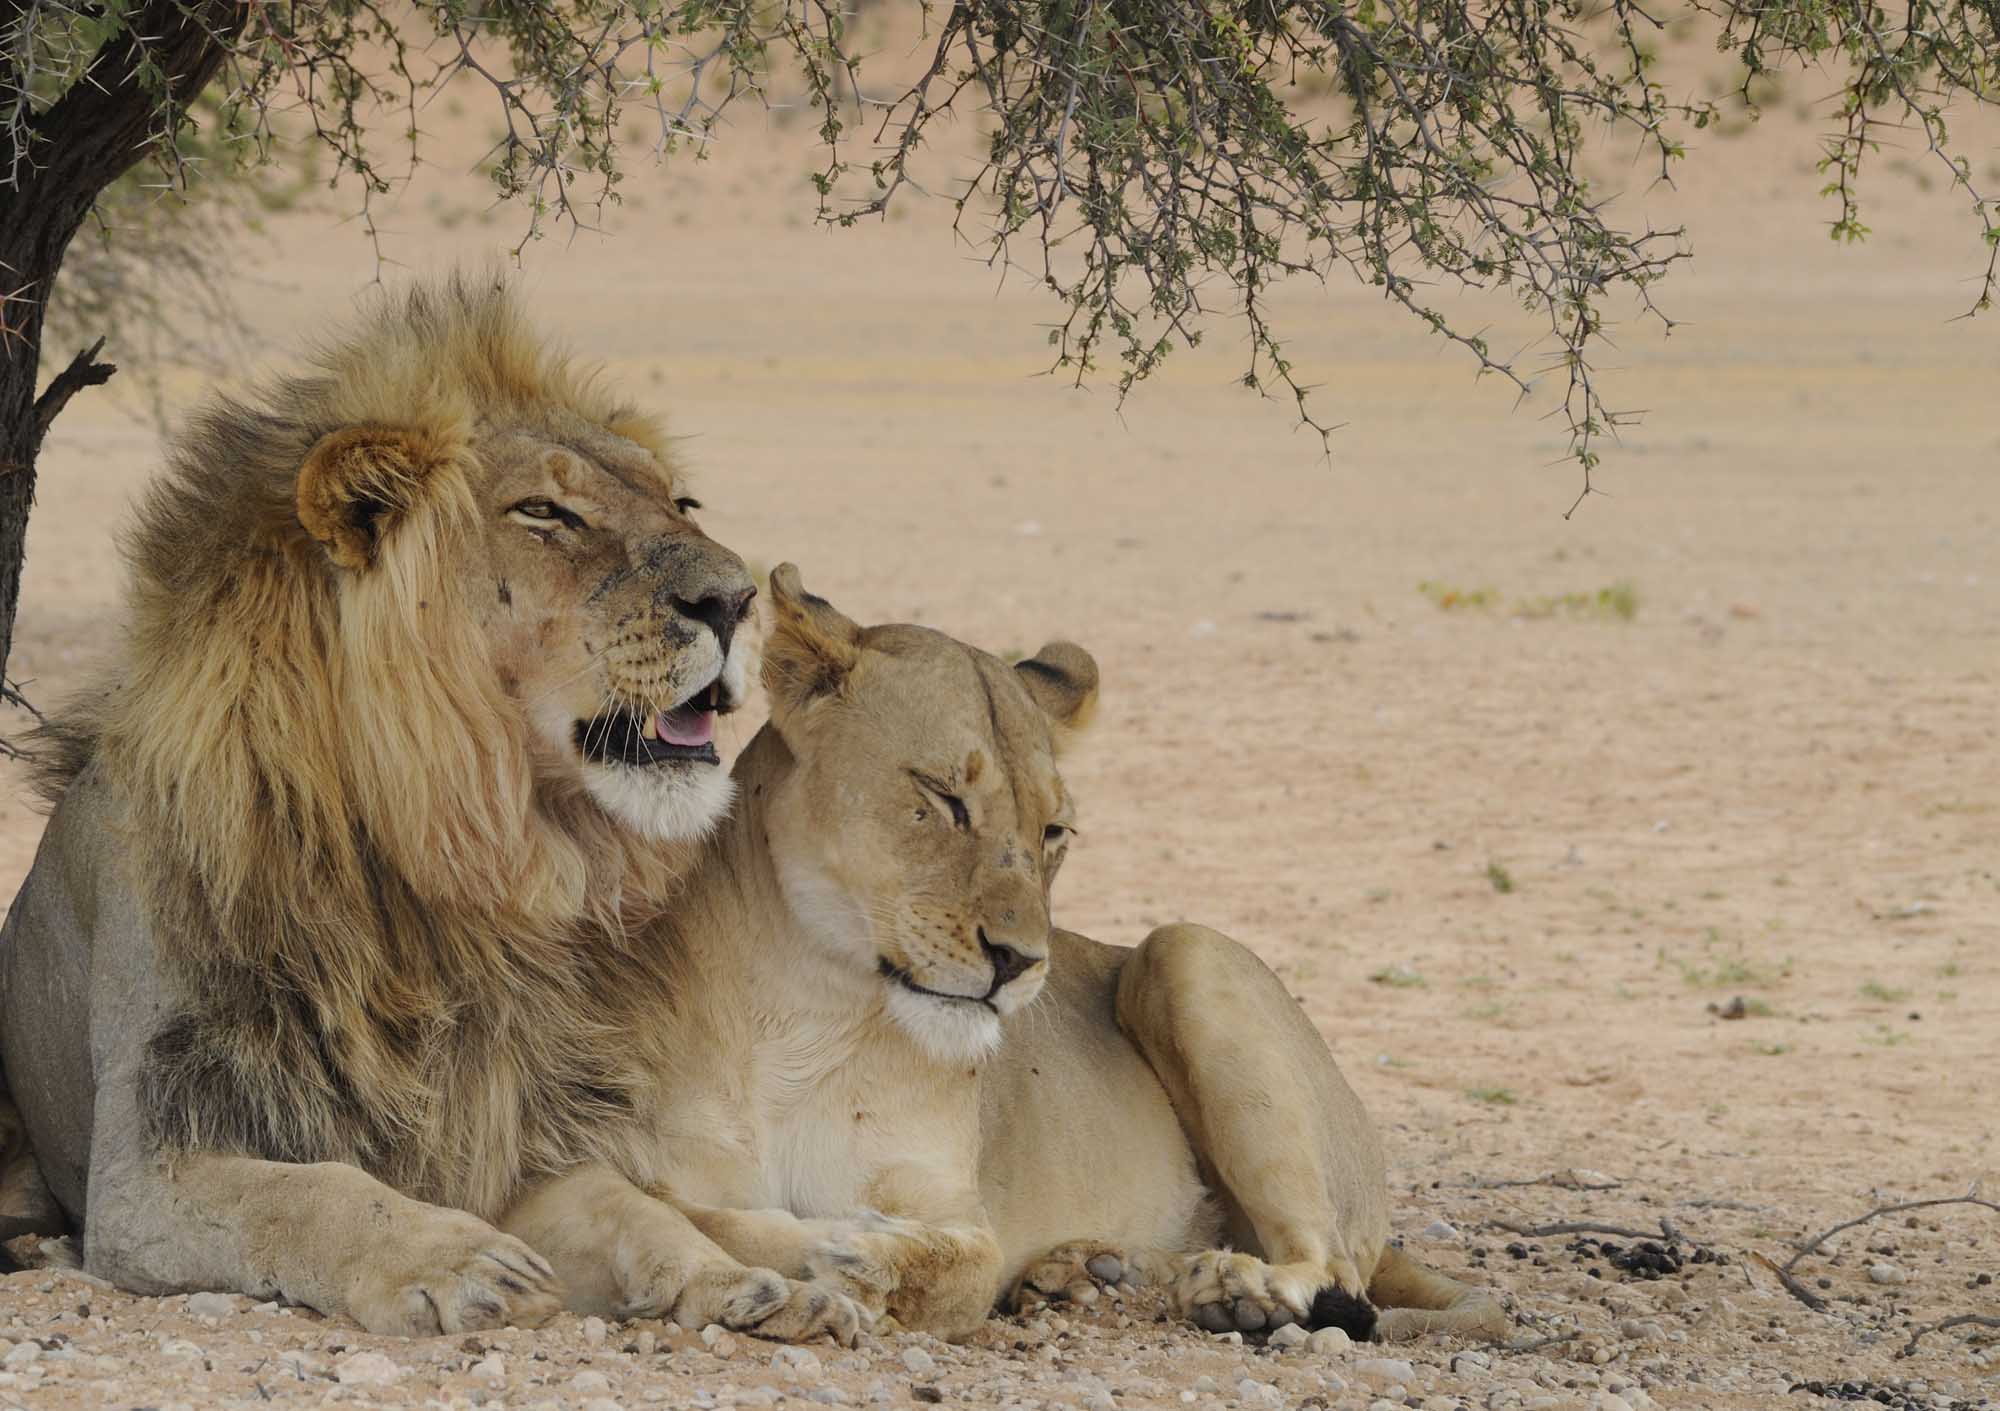 Lions in the Kalahari desert.